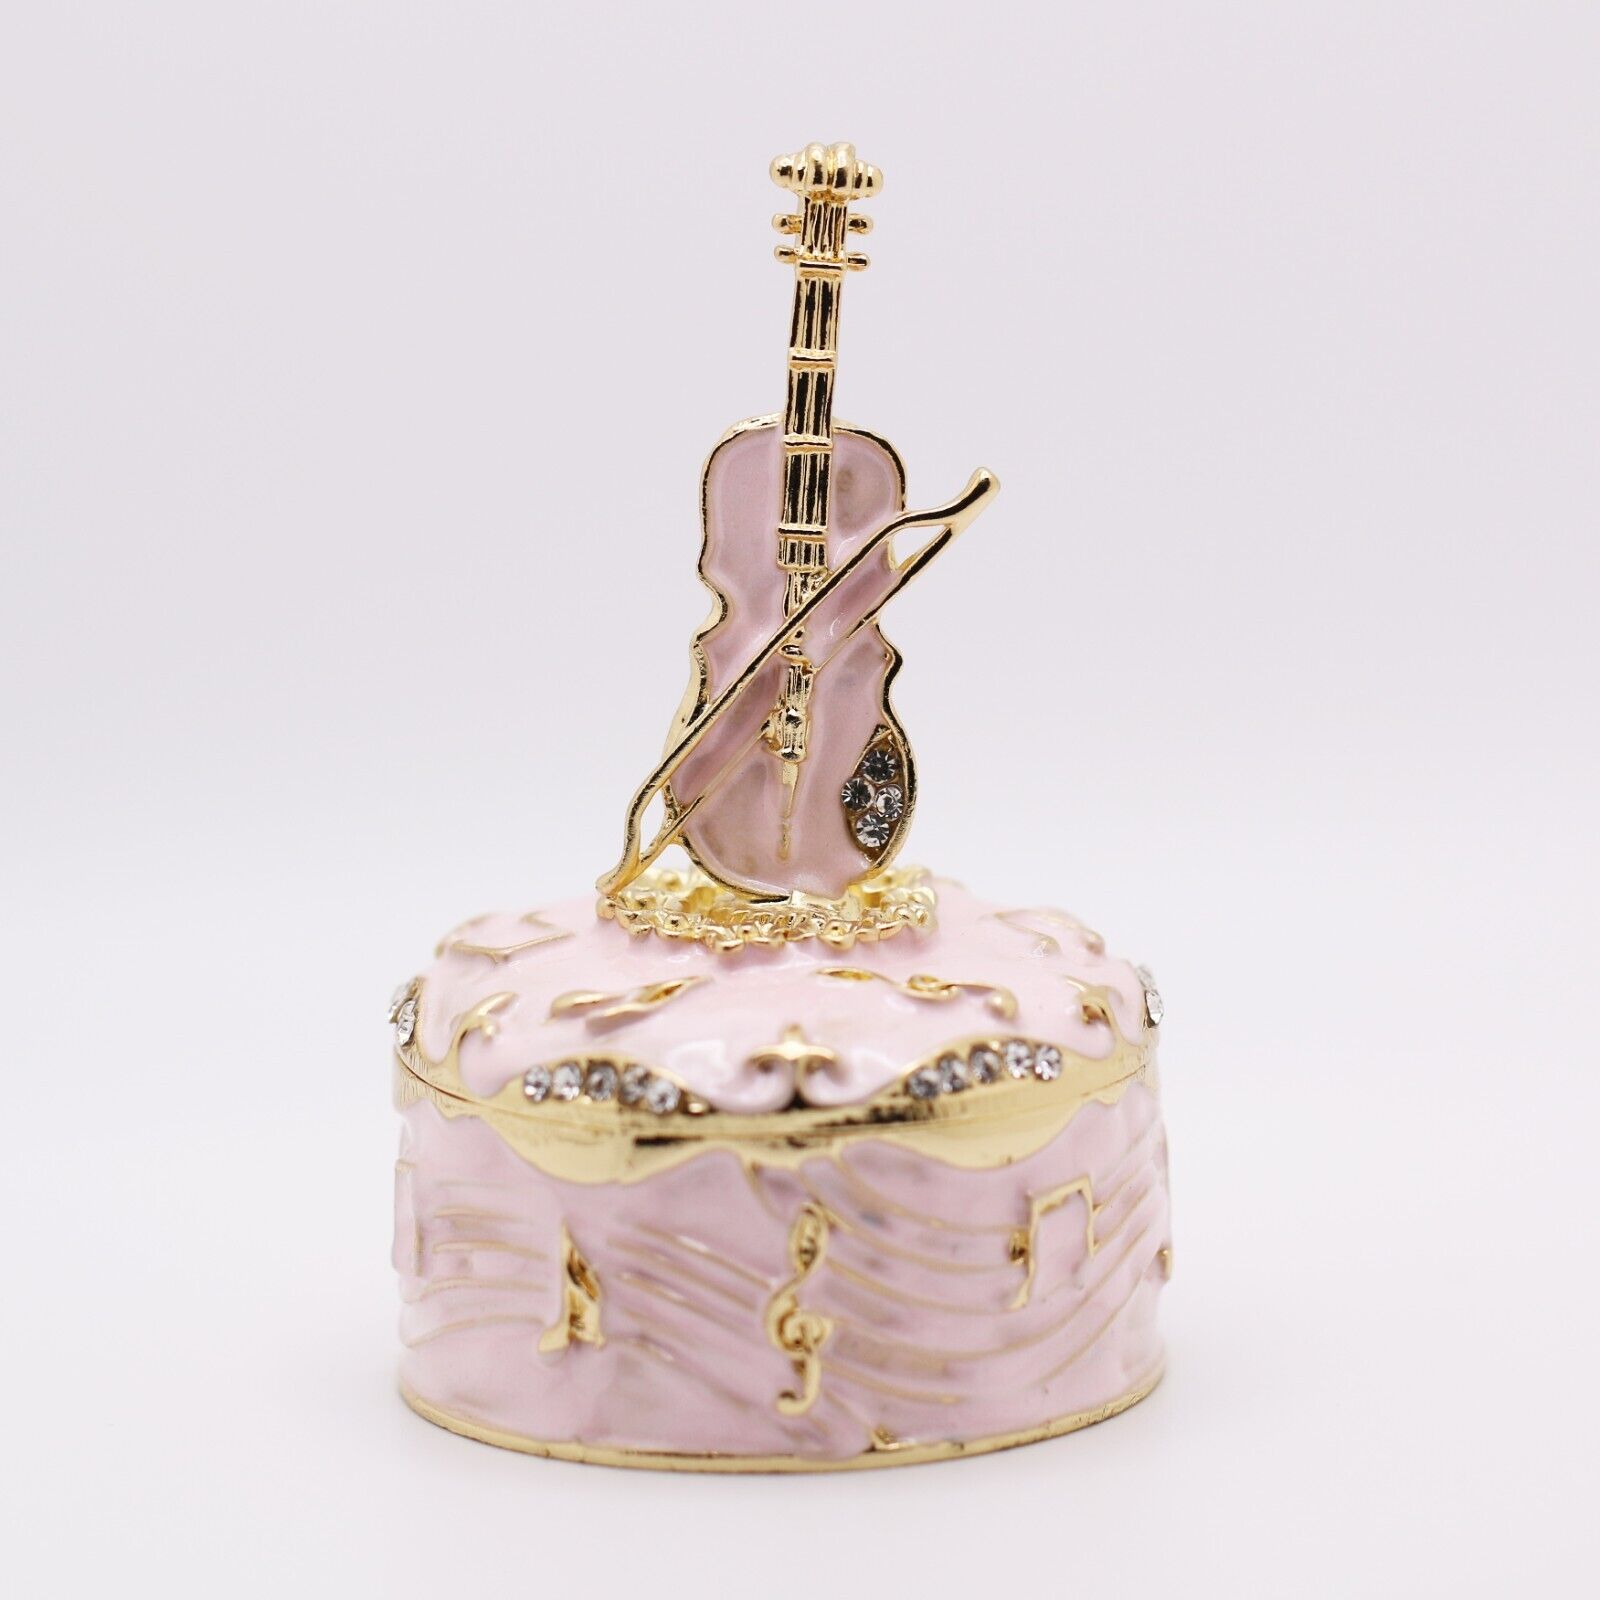 Bejeweled Enameled Hinged Trinket Box/Figurine With Rhinestones-Cute Pink Violin